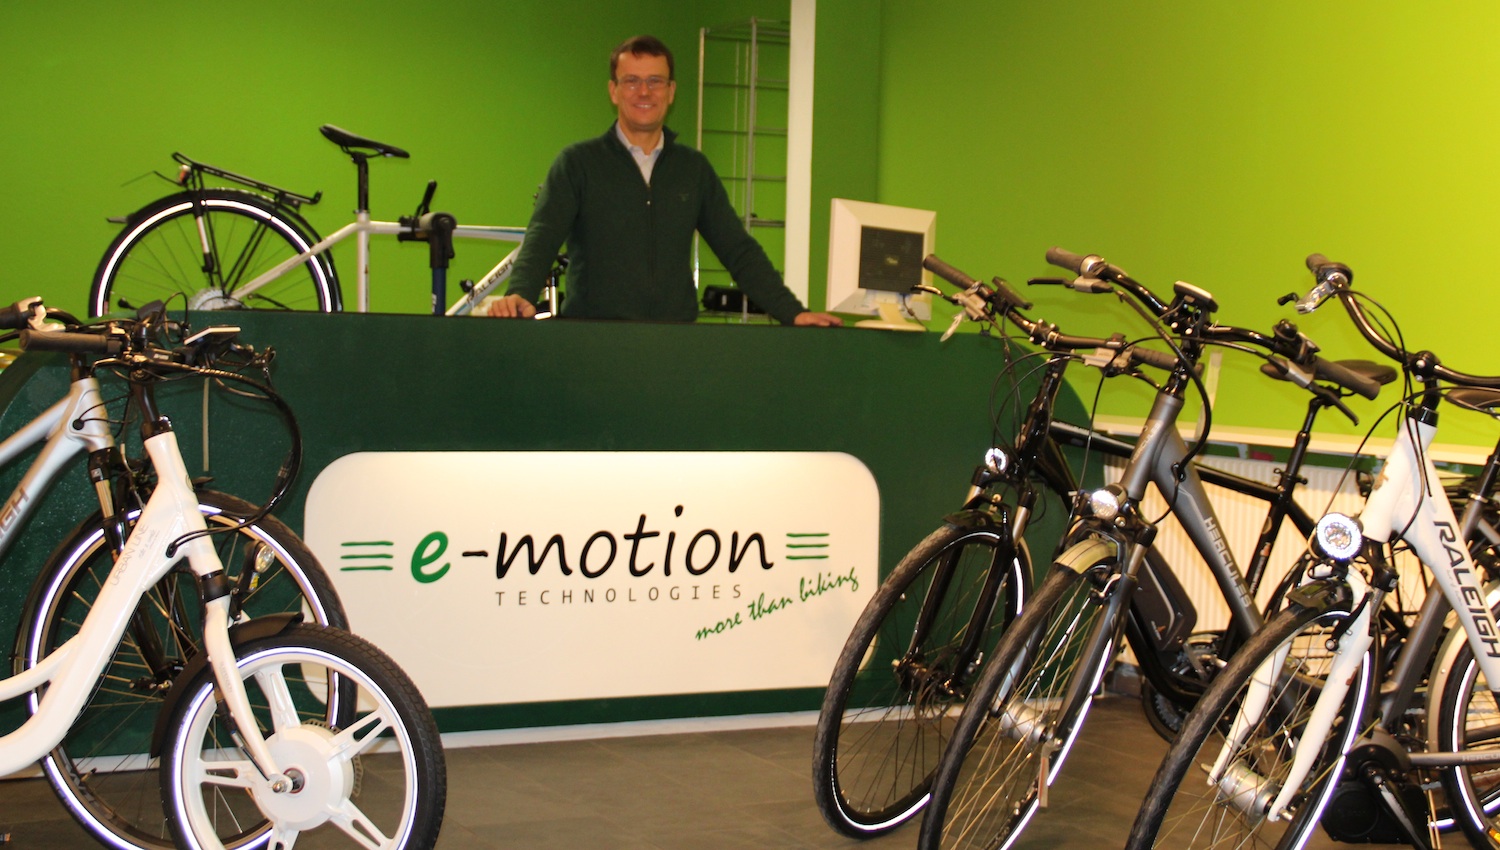 Bild 1 e-motion e-Bike Premium-Shop Hamburg in Wentorf bei Hamburg